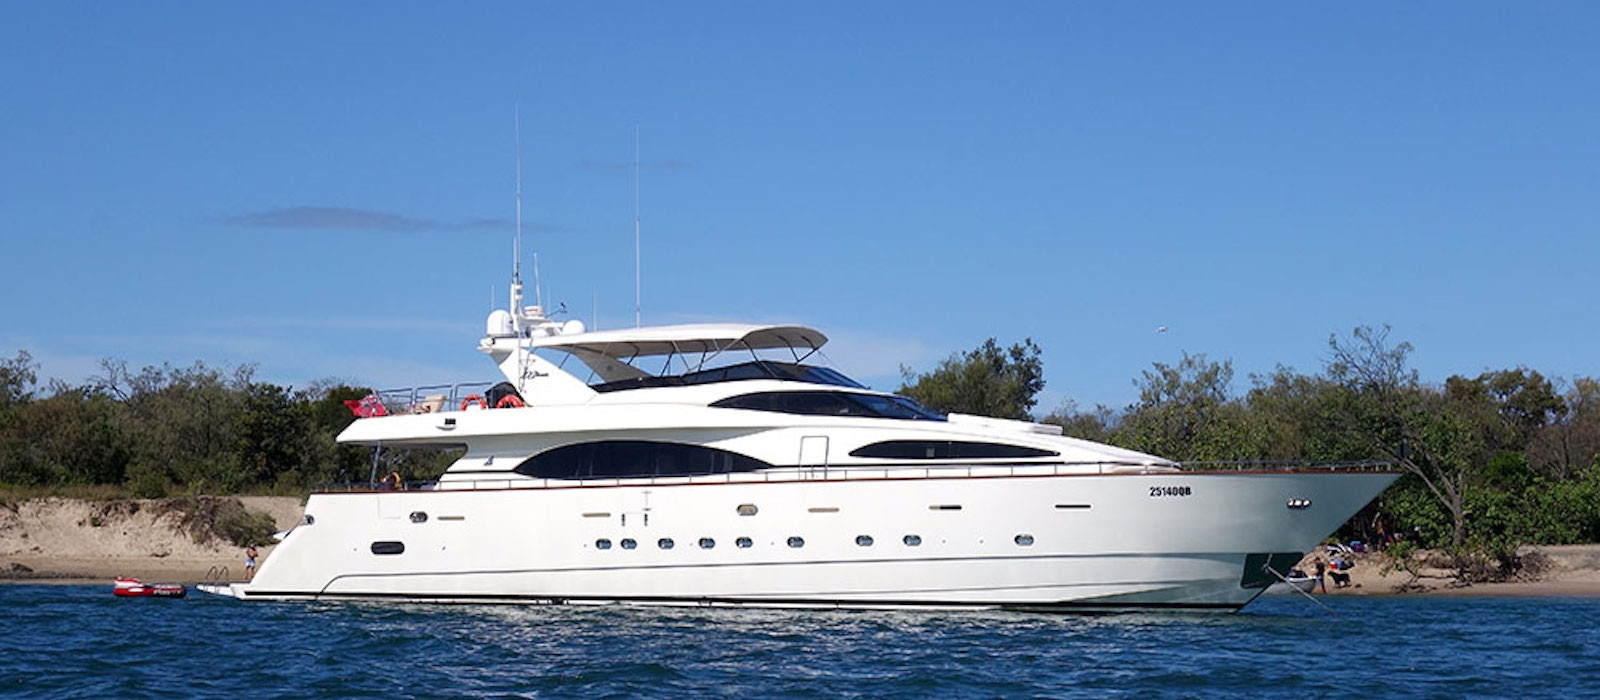 Side profile image of Lady Pamela luxury boat hire